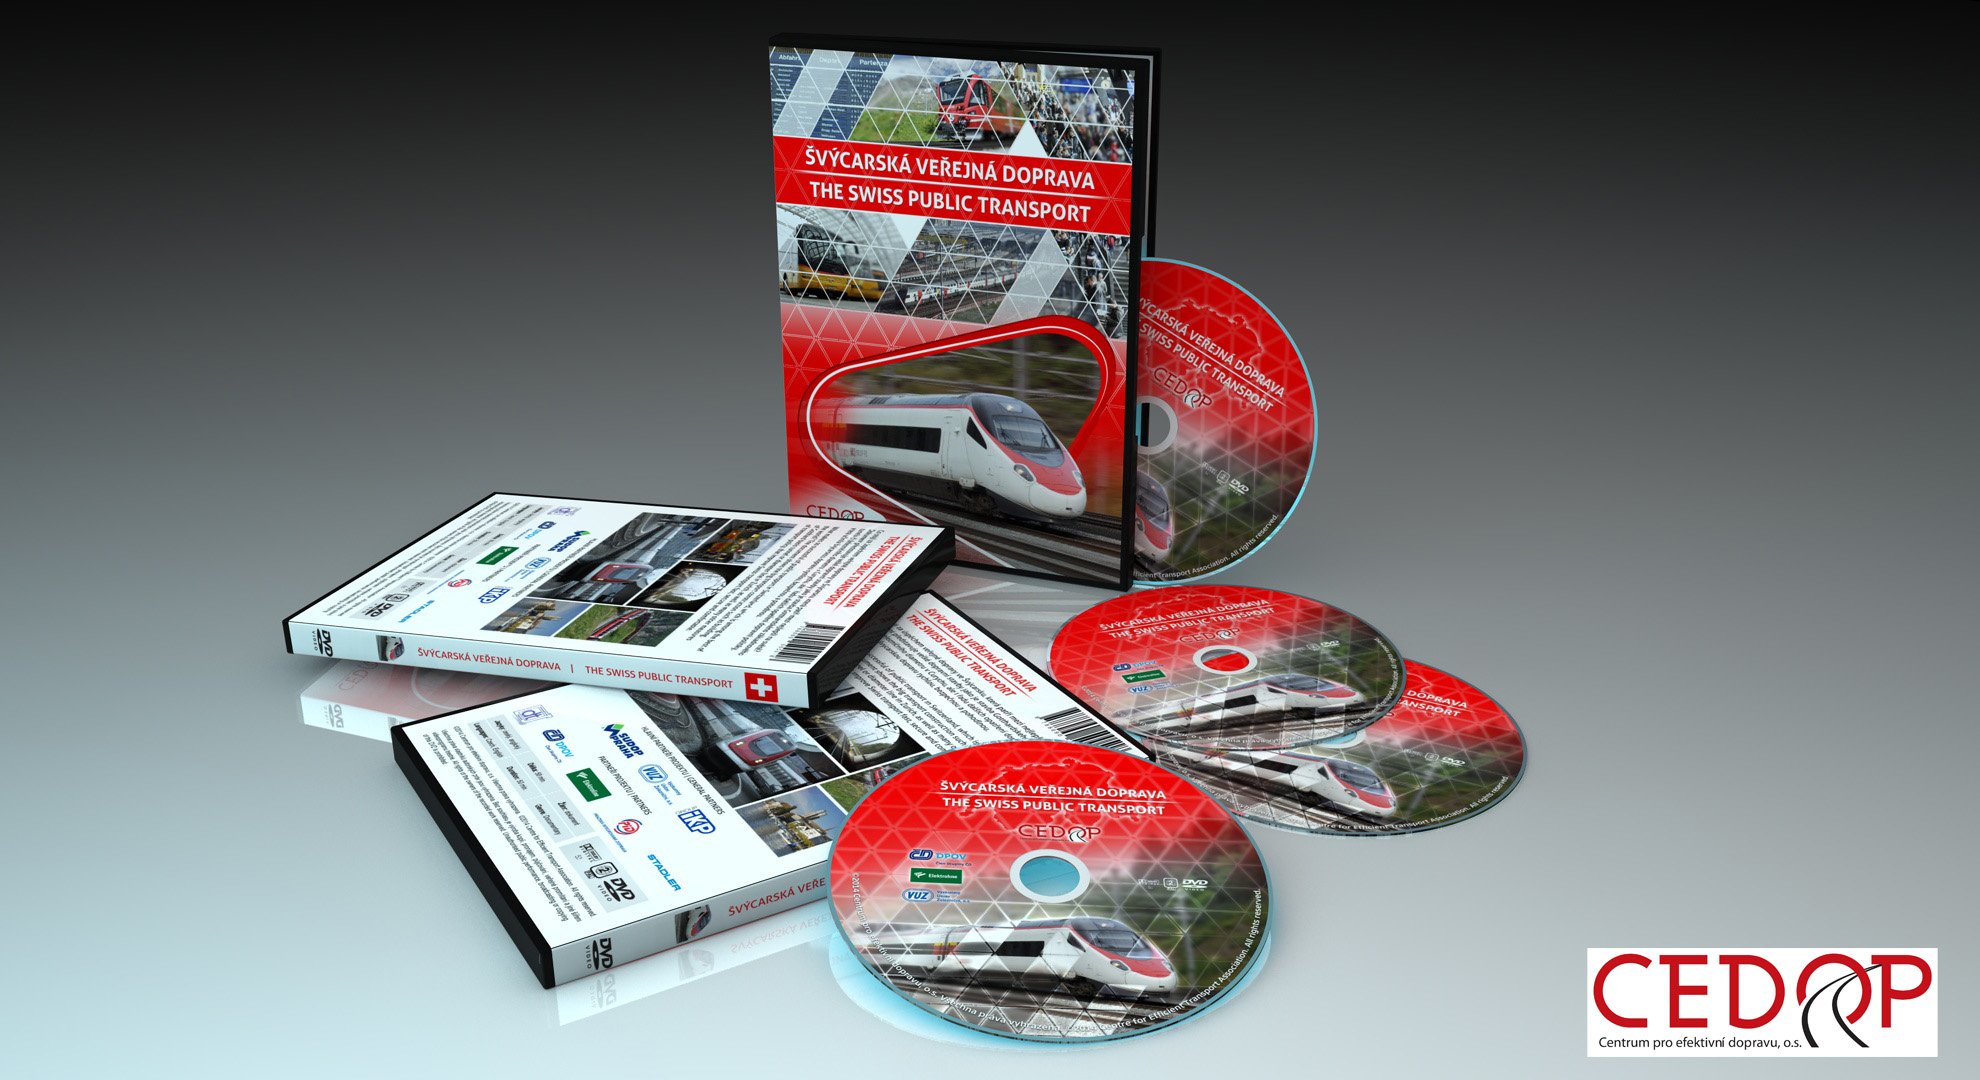 CEDOP DVD Švýcarská veřejná doprava